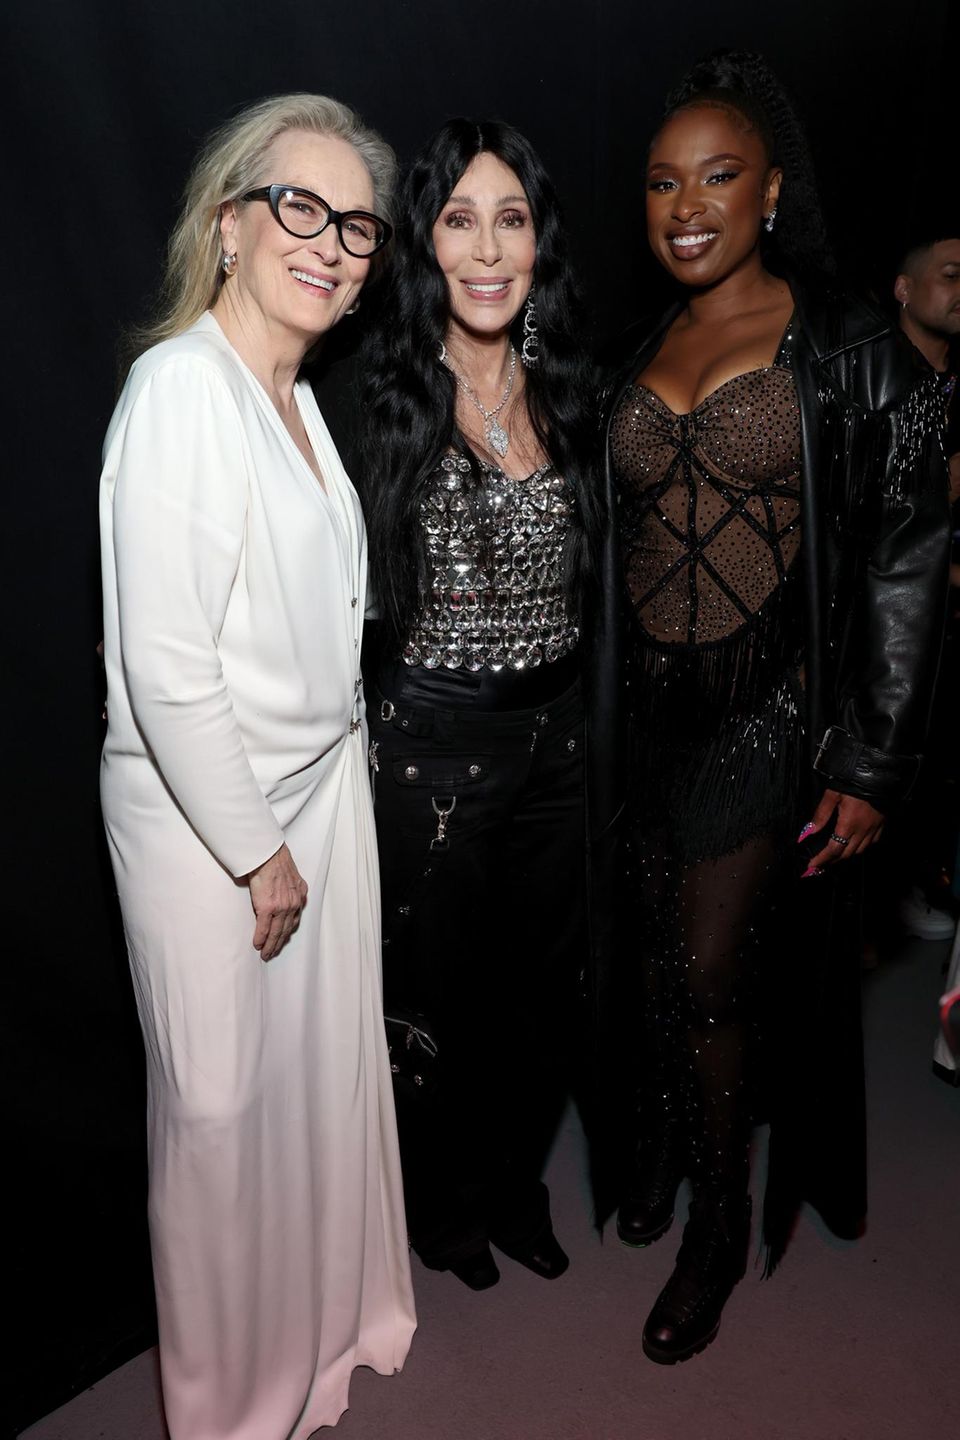 Meryl Streep, Cher und Jennifer Hudson bringen Glamour und Glanz auf die iHeartRadio Music Awards in Los Angeles! Meryl wählt zu diesem Anlass ein zartes, fließendes Maxikleid, welches sie in Kontrast zu ihrer dunklen Brille setzt. Bei Cher und Jennifer ist hingegen Glitzer en masse angesagt. Strahlen tun sie jedoch alle allemal!